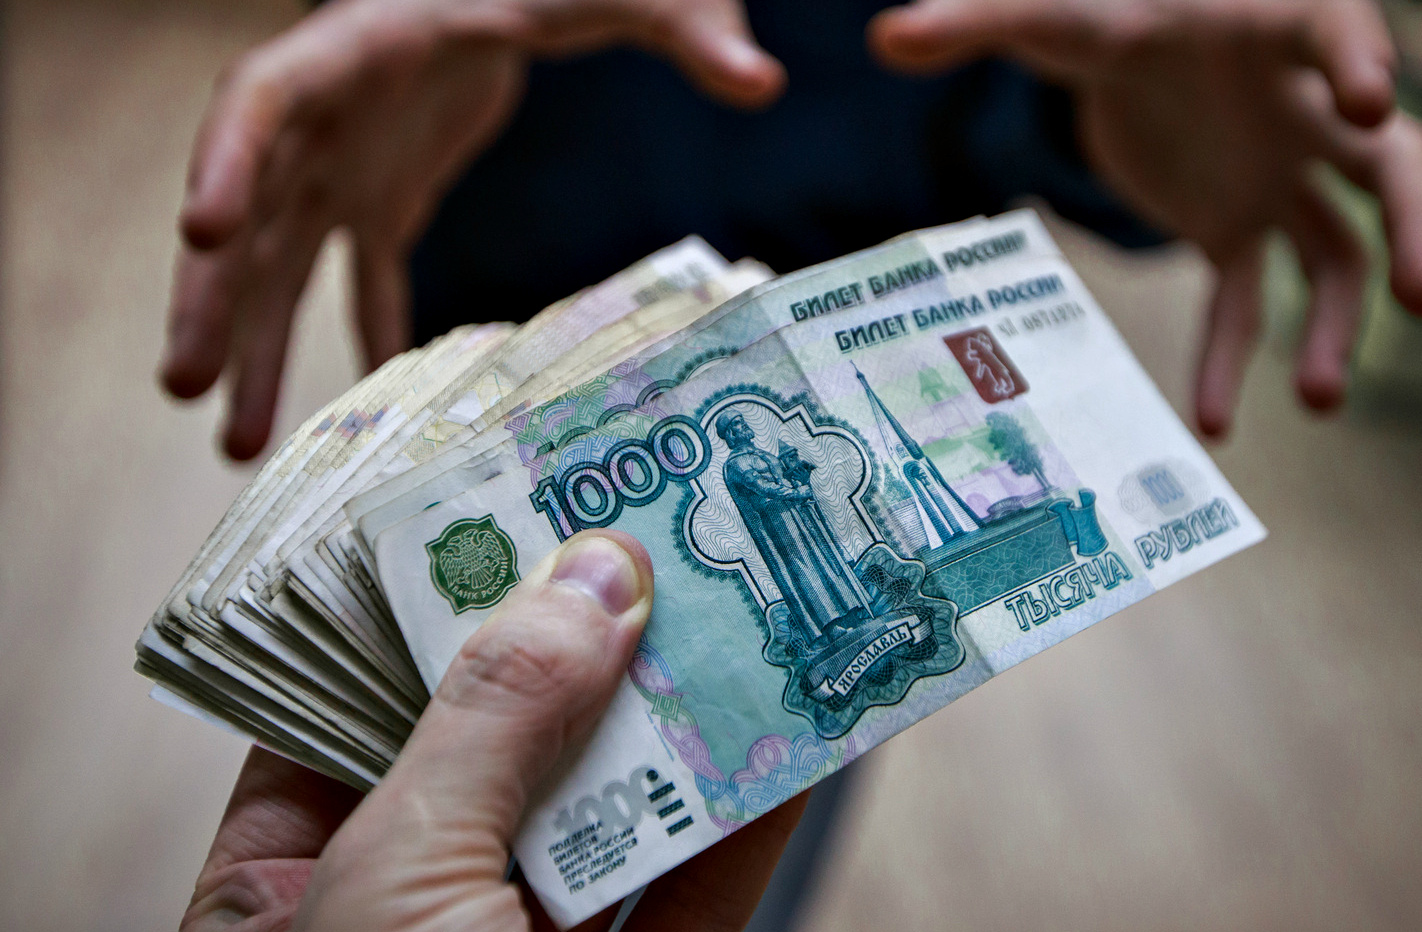 ФСБ задержала двух чиновников мэрии за взятку в 350 тысяч рублей